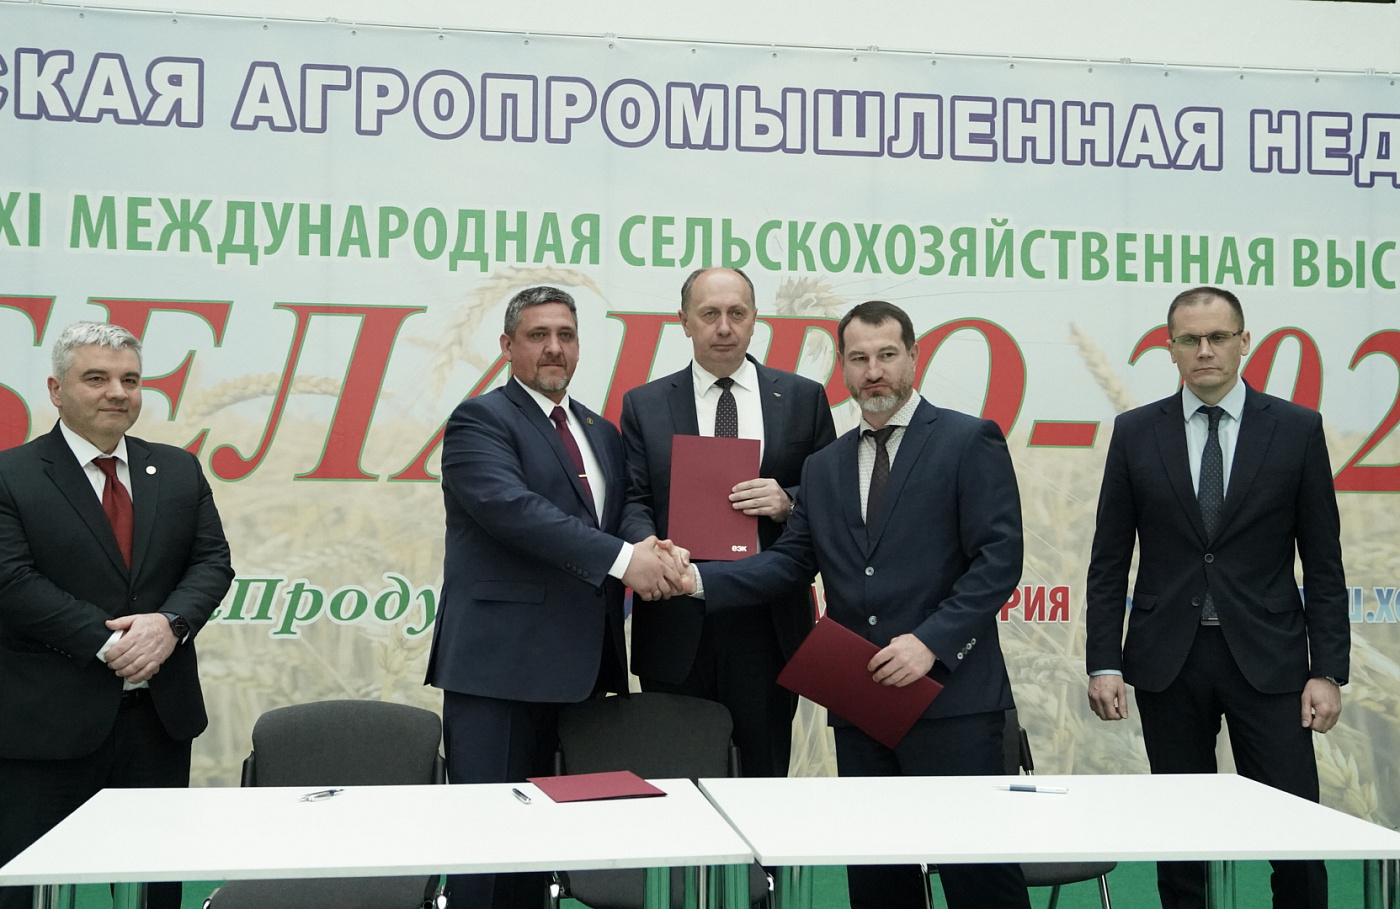  Предприятия сельхозмашиностроения России и Беларуси договорились о развитии долгосрочного и партнерства